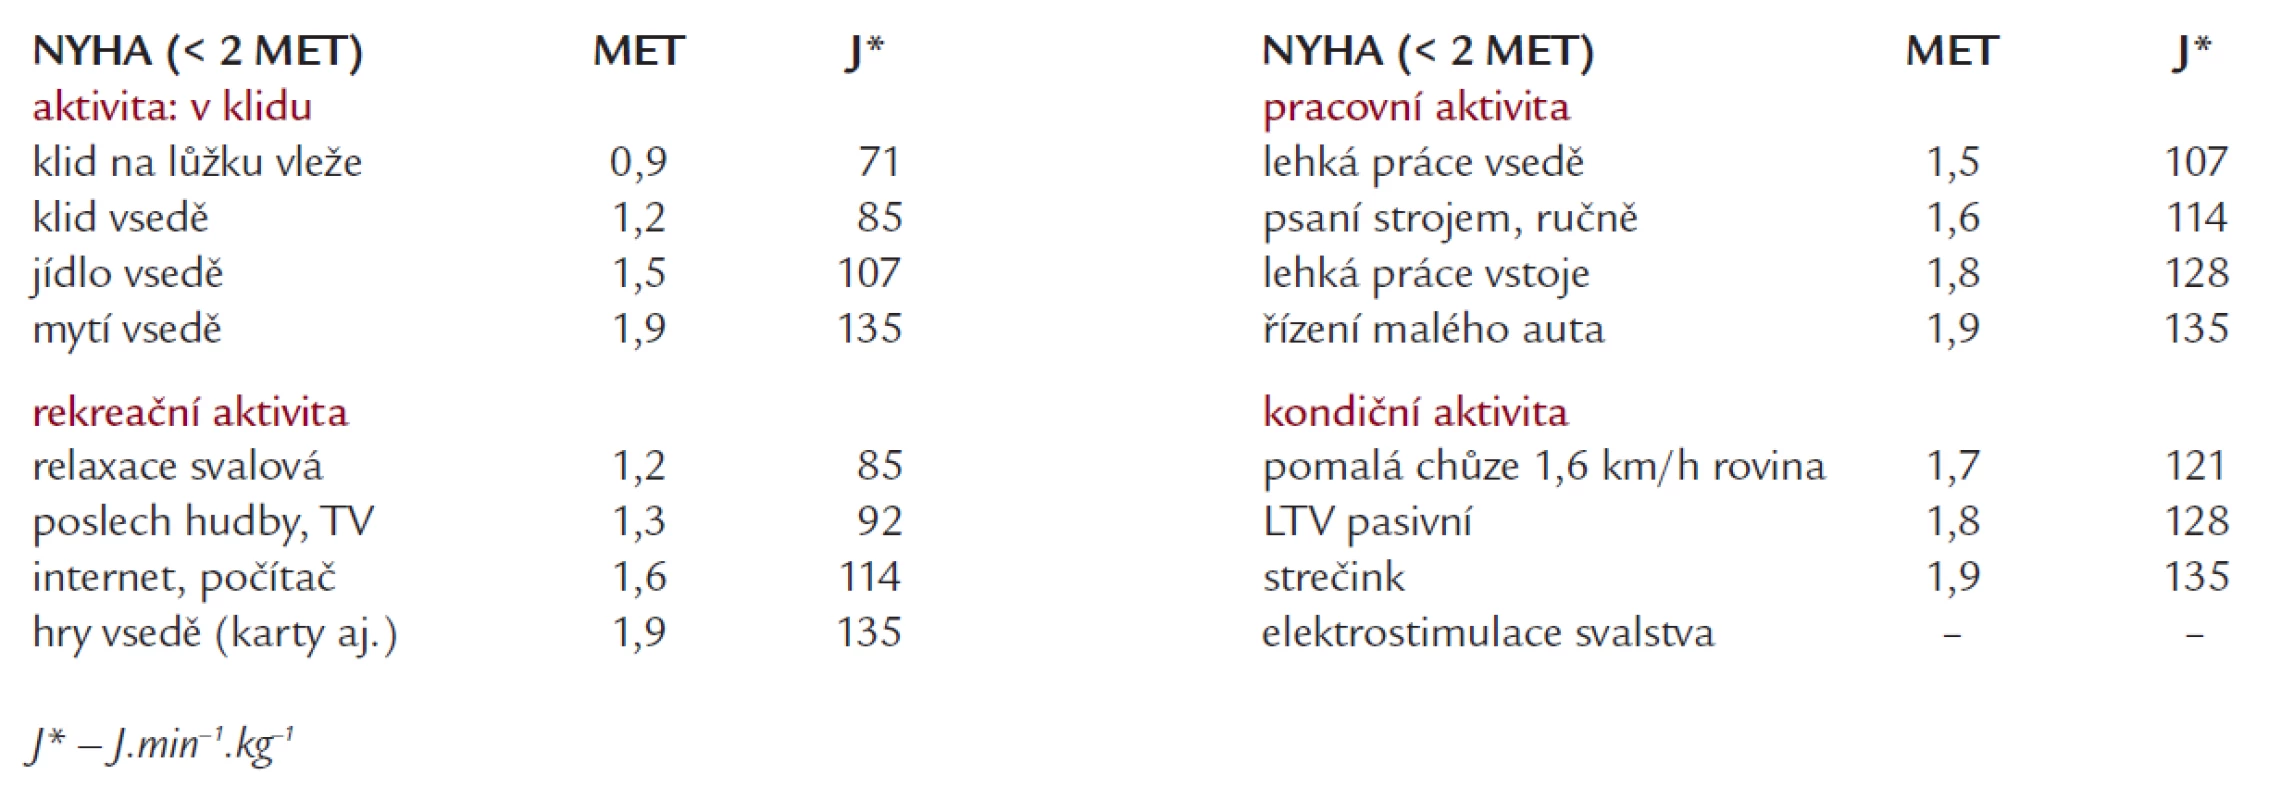 Druhy fyzické zátěže a jejich energetická náročnost skupiny NYHA IV (vybráno a upraveno podle [21–23]).